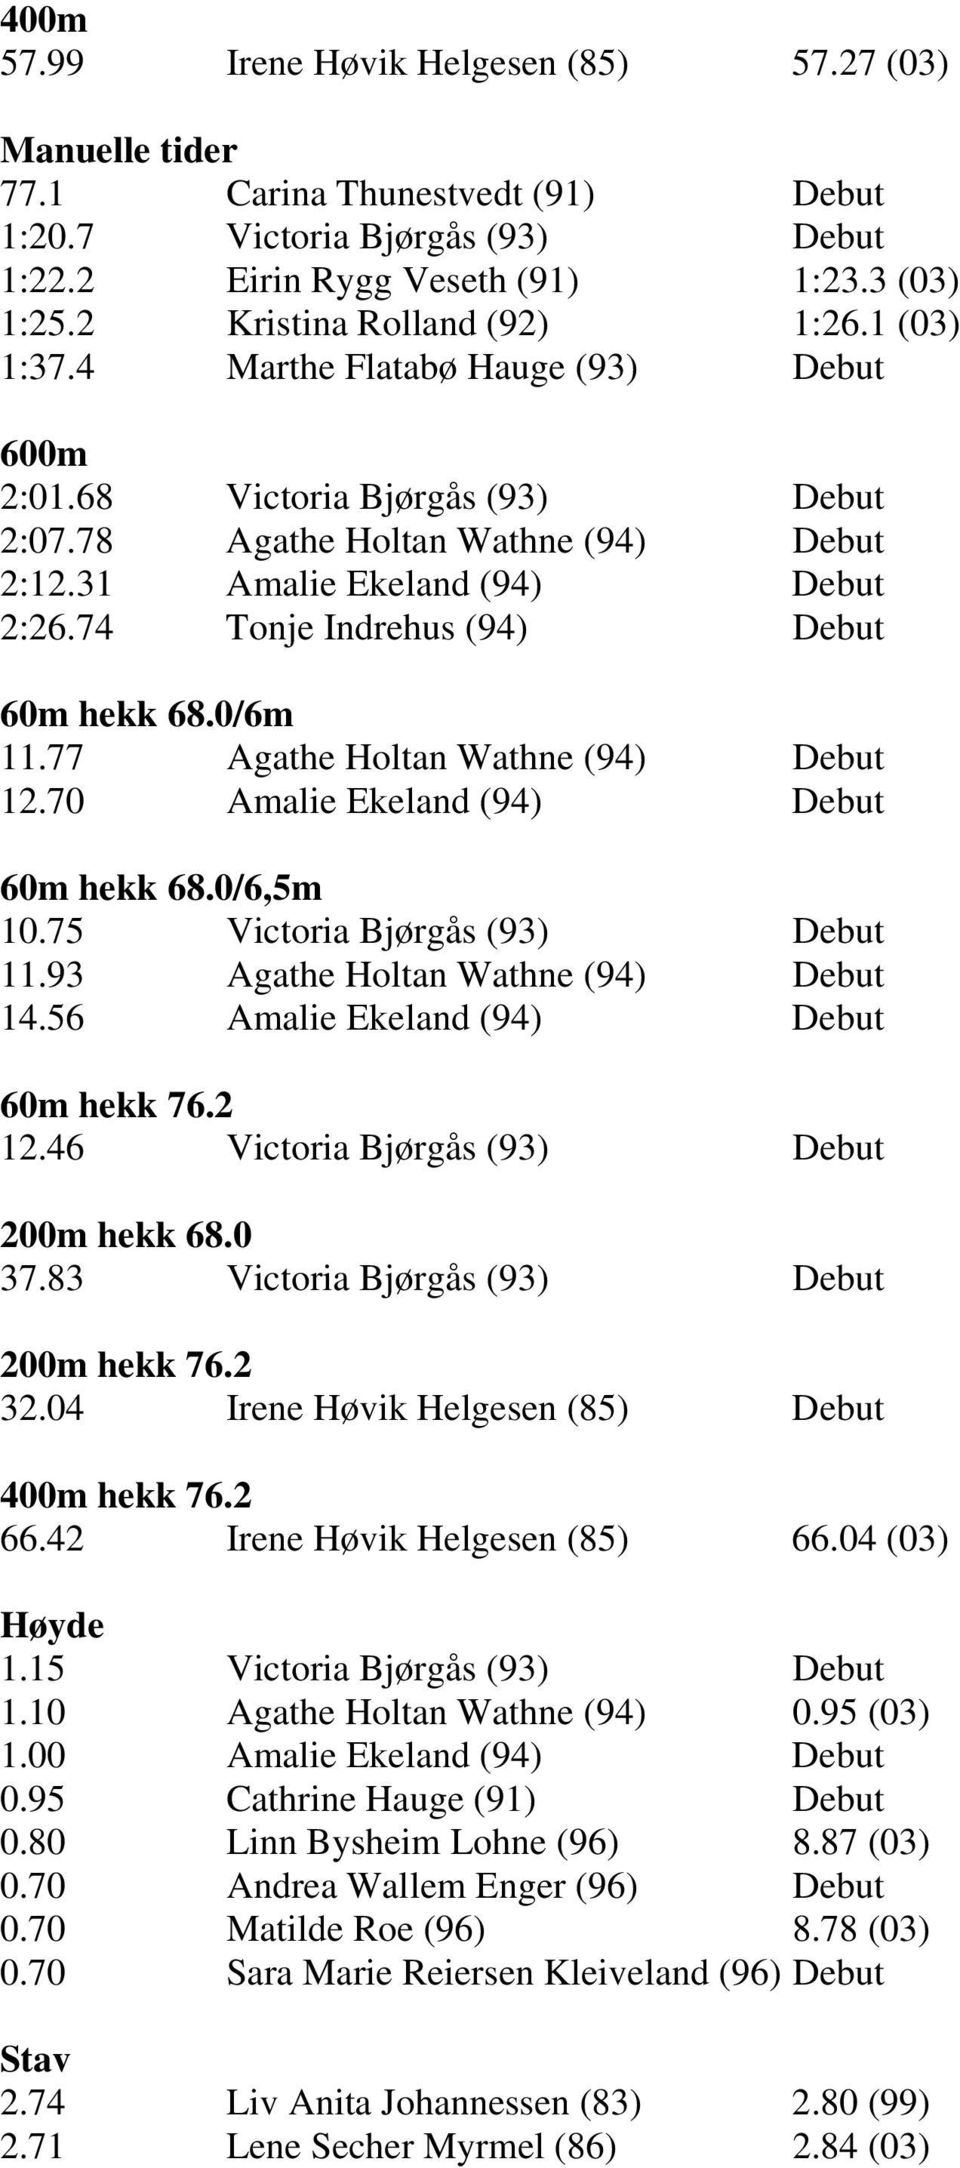 74 Tonje Indrehus (94) Debut 60m hekk 68.0/6m 11.77 Agathe Holtan Wathne (94) Debut 12.70 Amalie Ekeland (94) Debut 60m hekk 68.0/6,5m 10.75 Victoria Bjørgås (93) Debut 11.